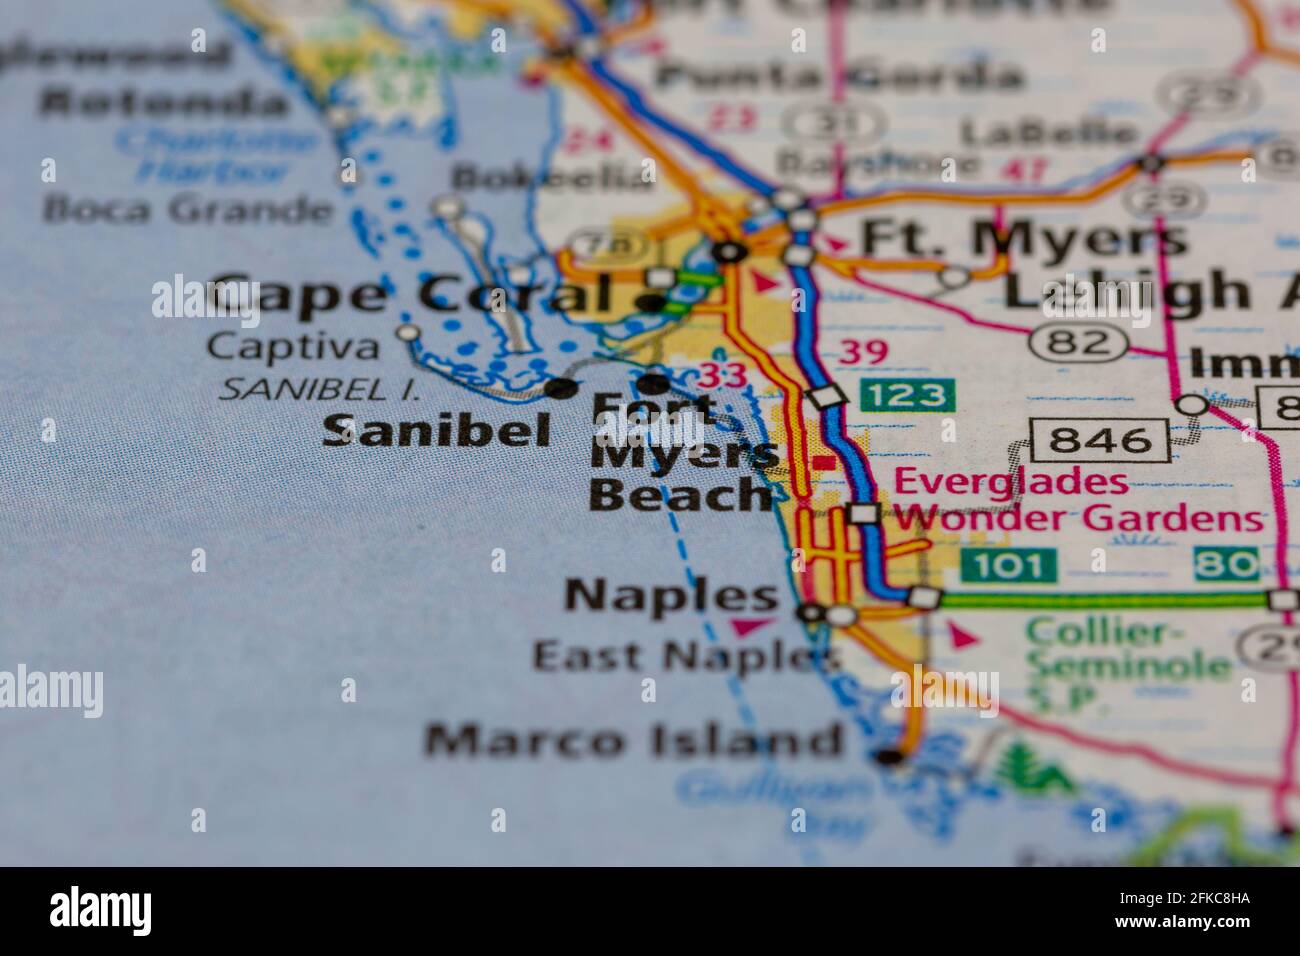 Fort Myers Beach Florida USA illustré sur une carte géographique ou carte routière Banque D'Images